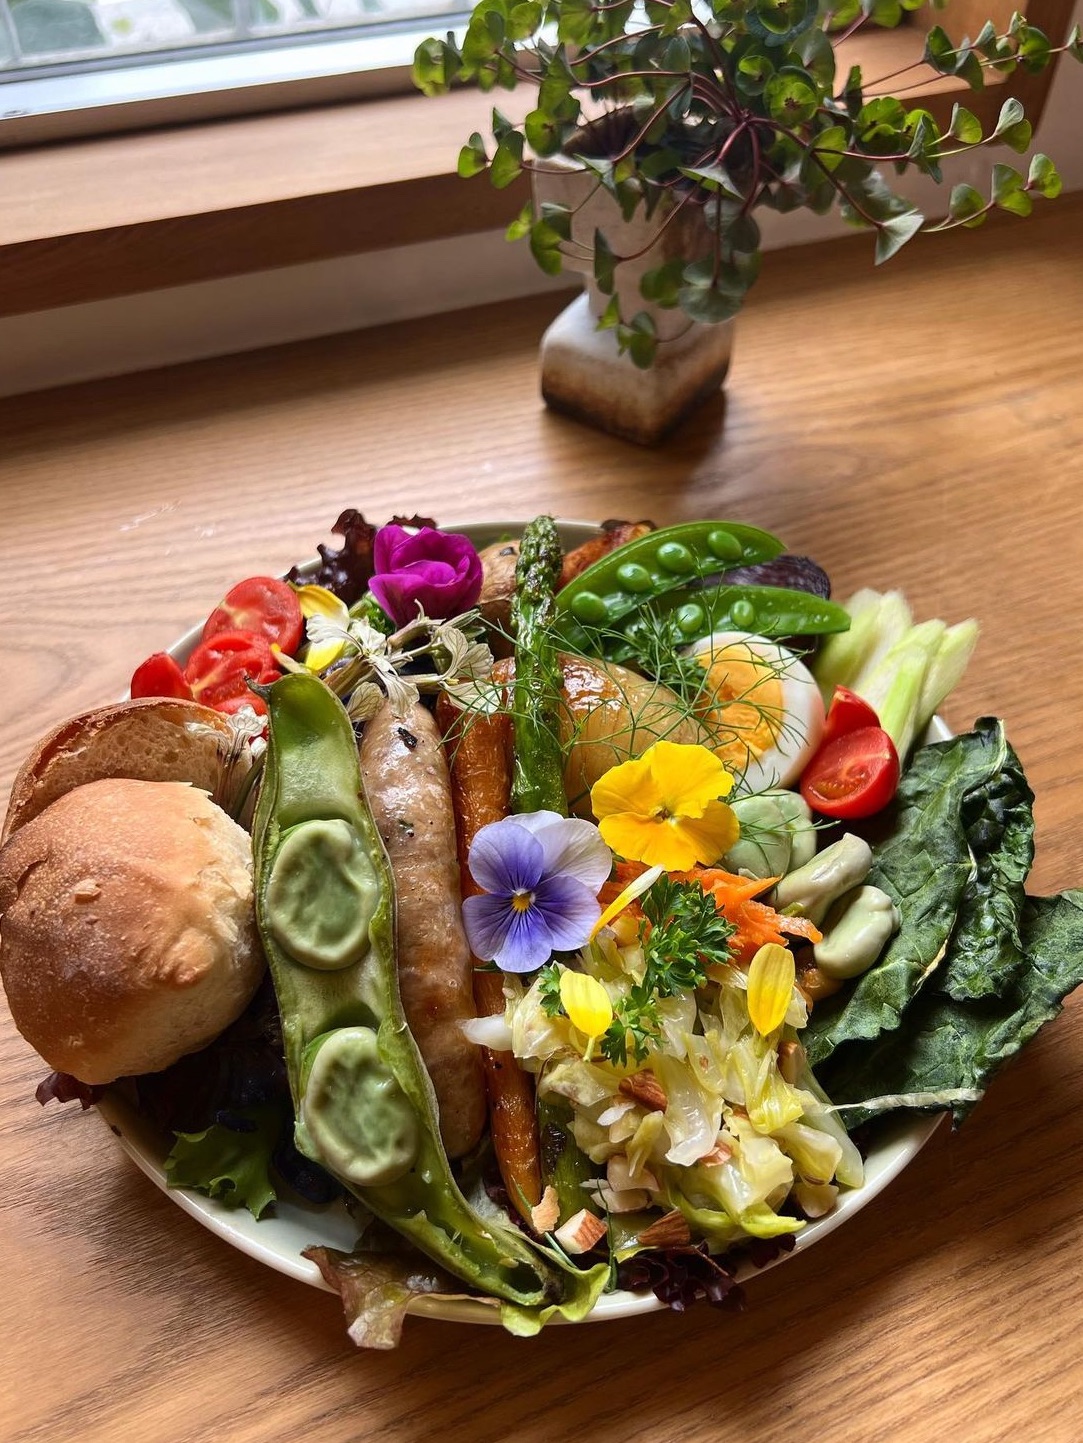 [福冈咖啡馆]每月沙拉很棒!🥗从身体排毒!